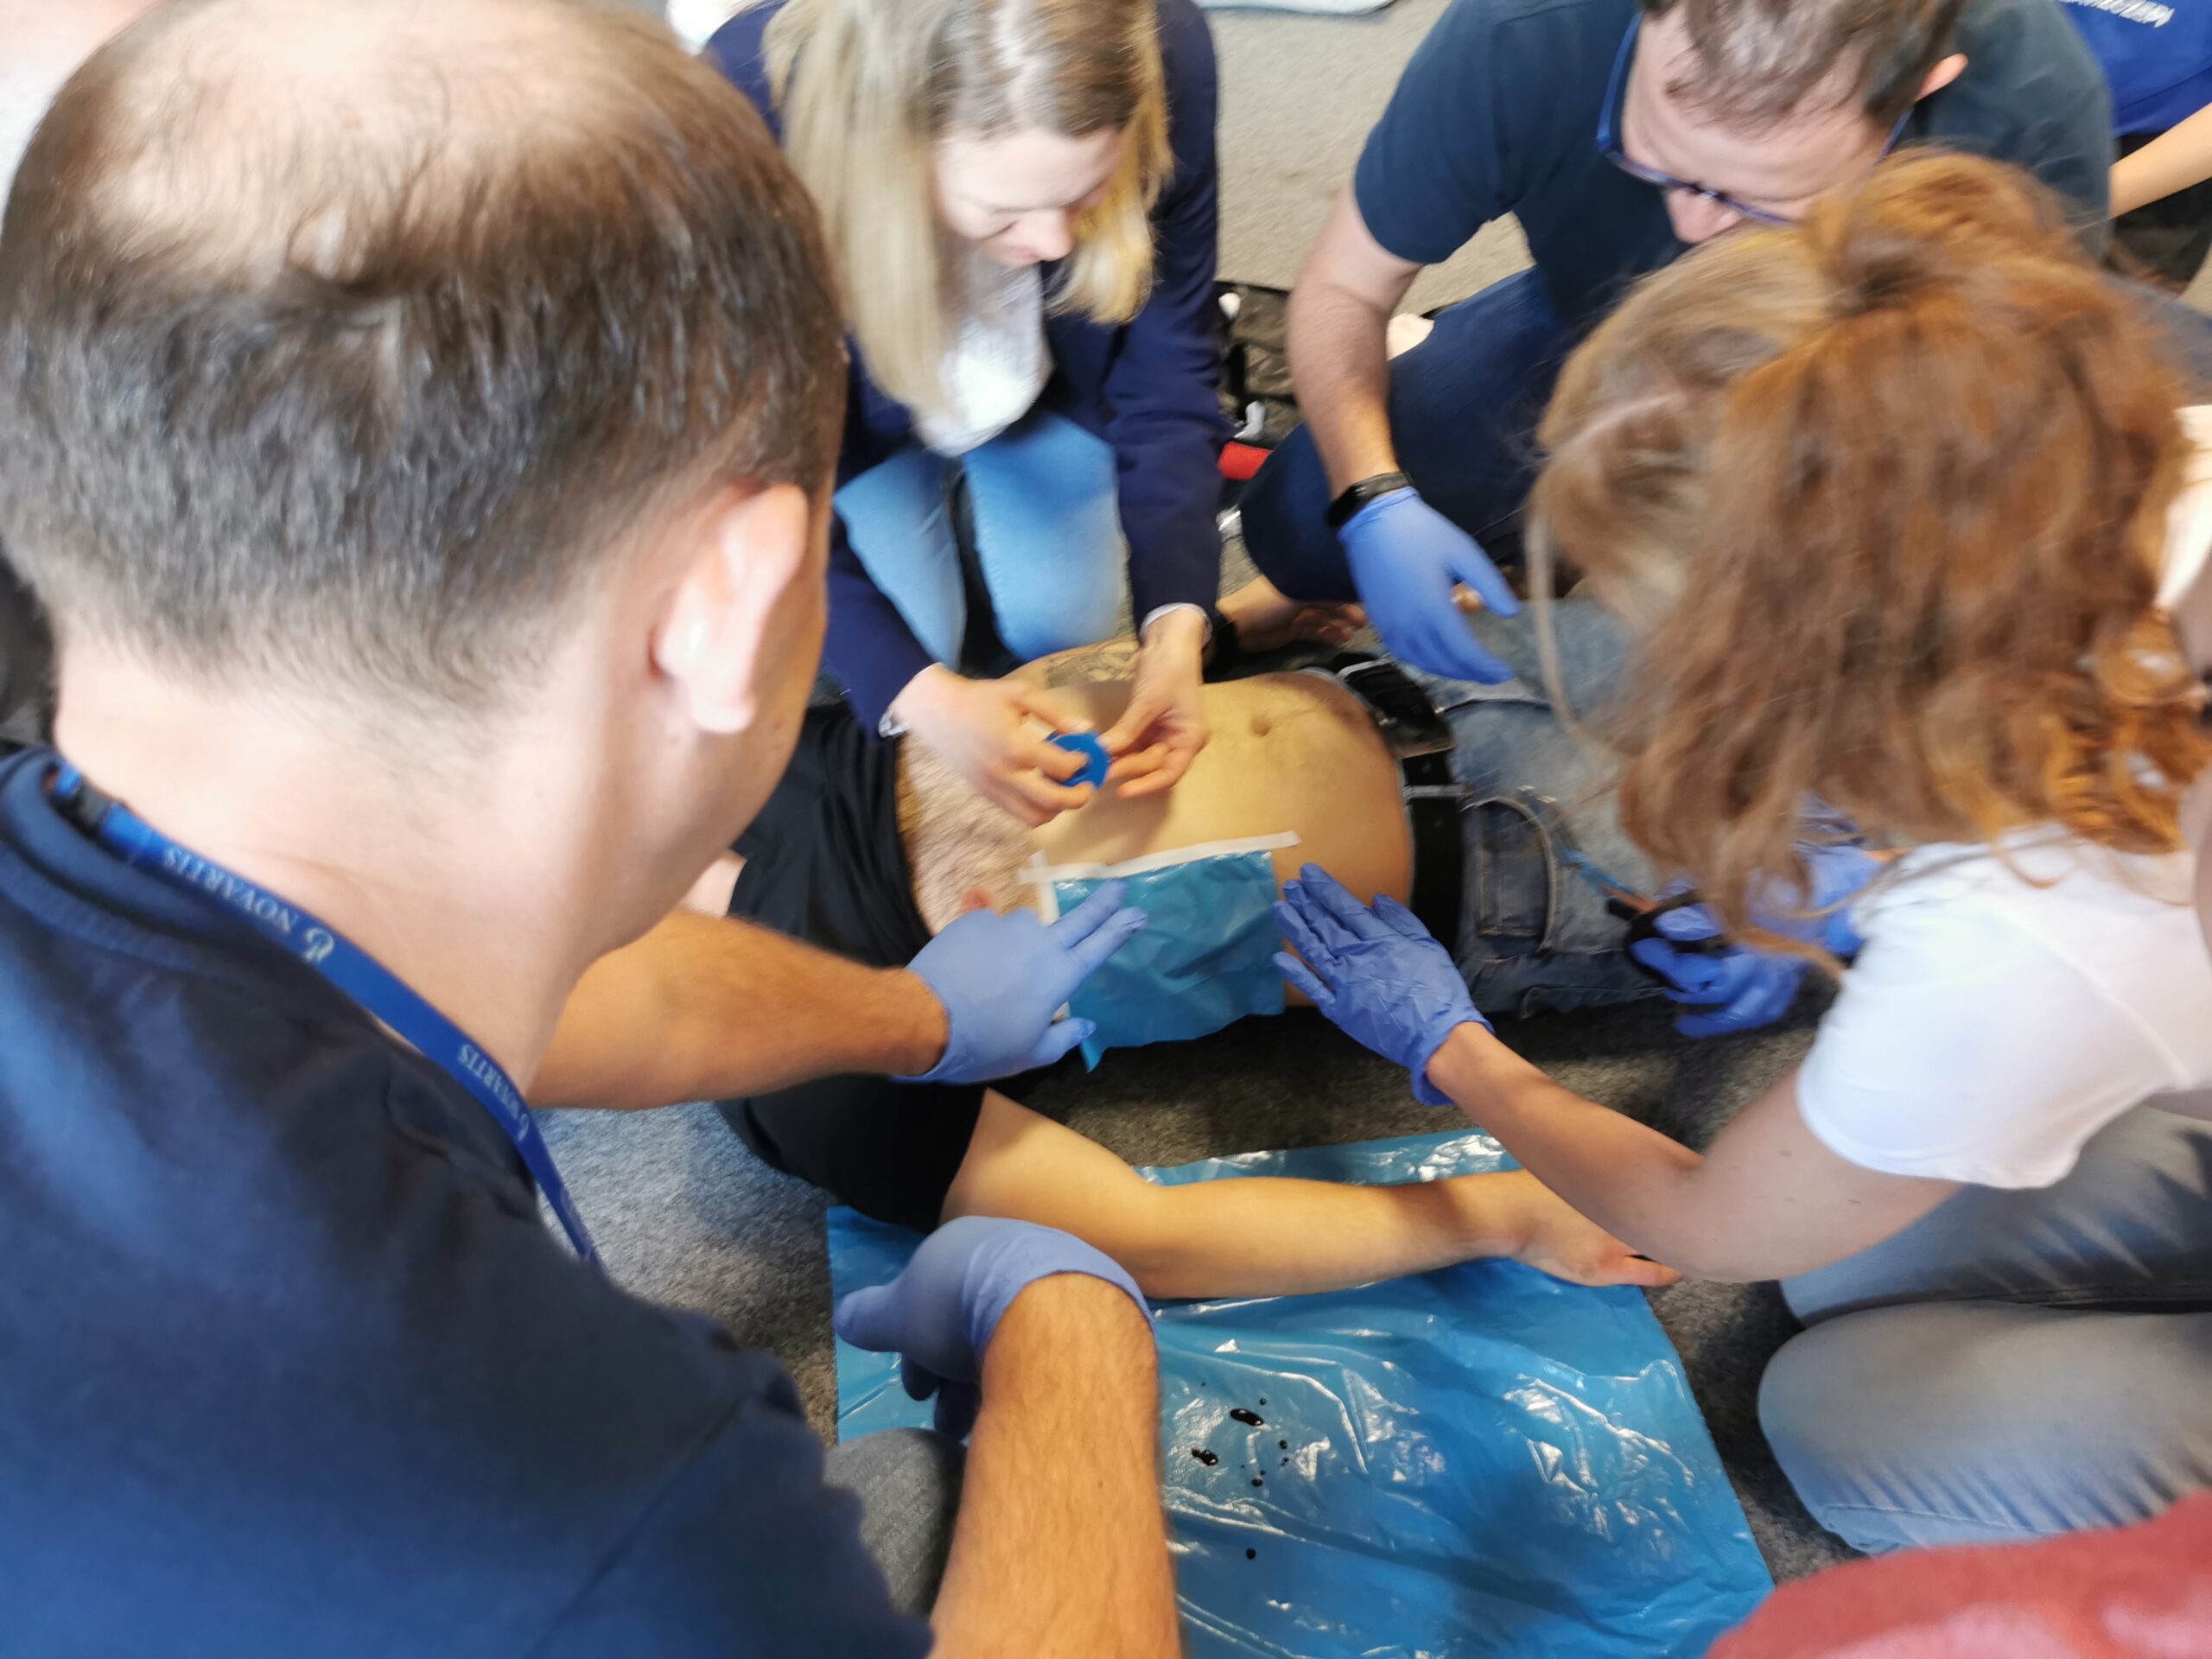 Szkolenie z pierwszej pomocy i zajęcia resuscytacji krążeniowo-oddechowej. Zajęcia w Greater Houston Area.